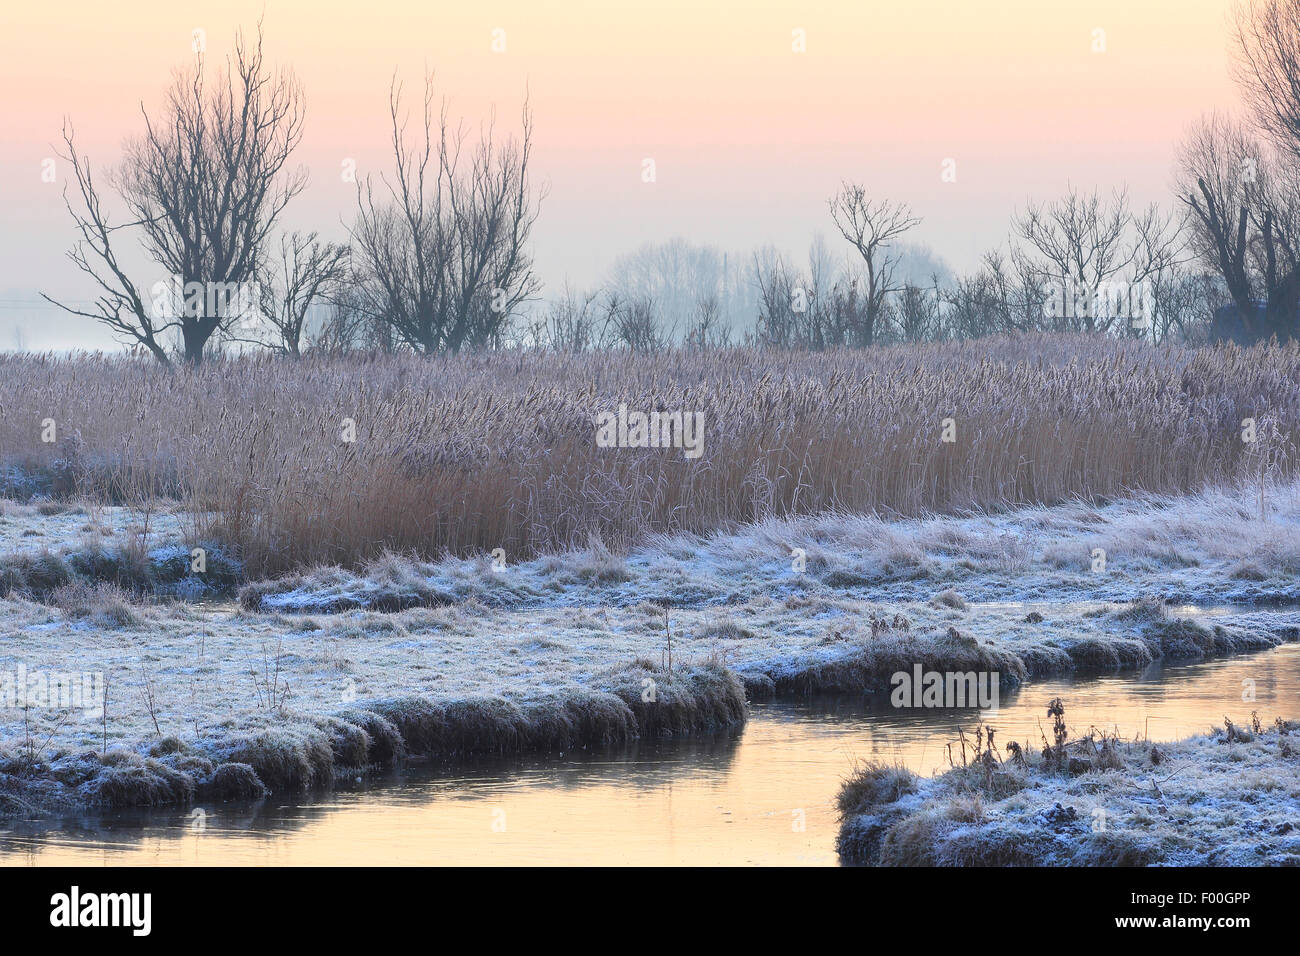 polder landscape in winter, Uitkerkse polder, Belgium Stock Photo